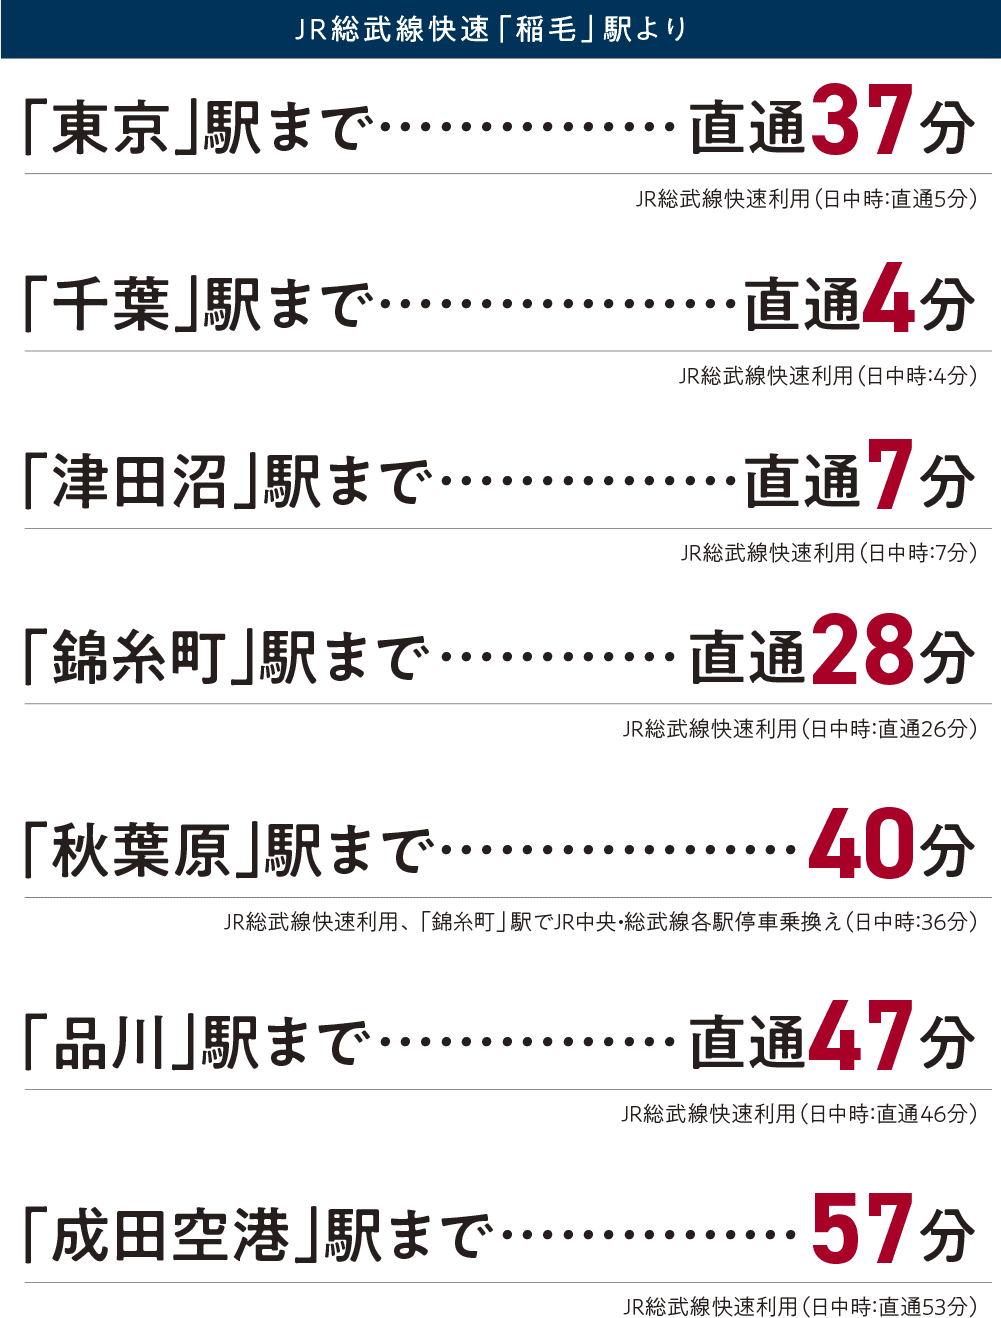 JR総武線快速「稲毛」駅から各駅までの所有時間 図